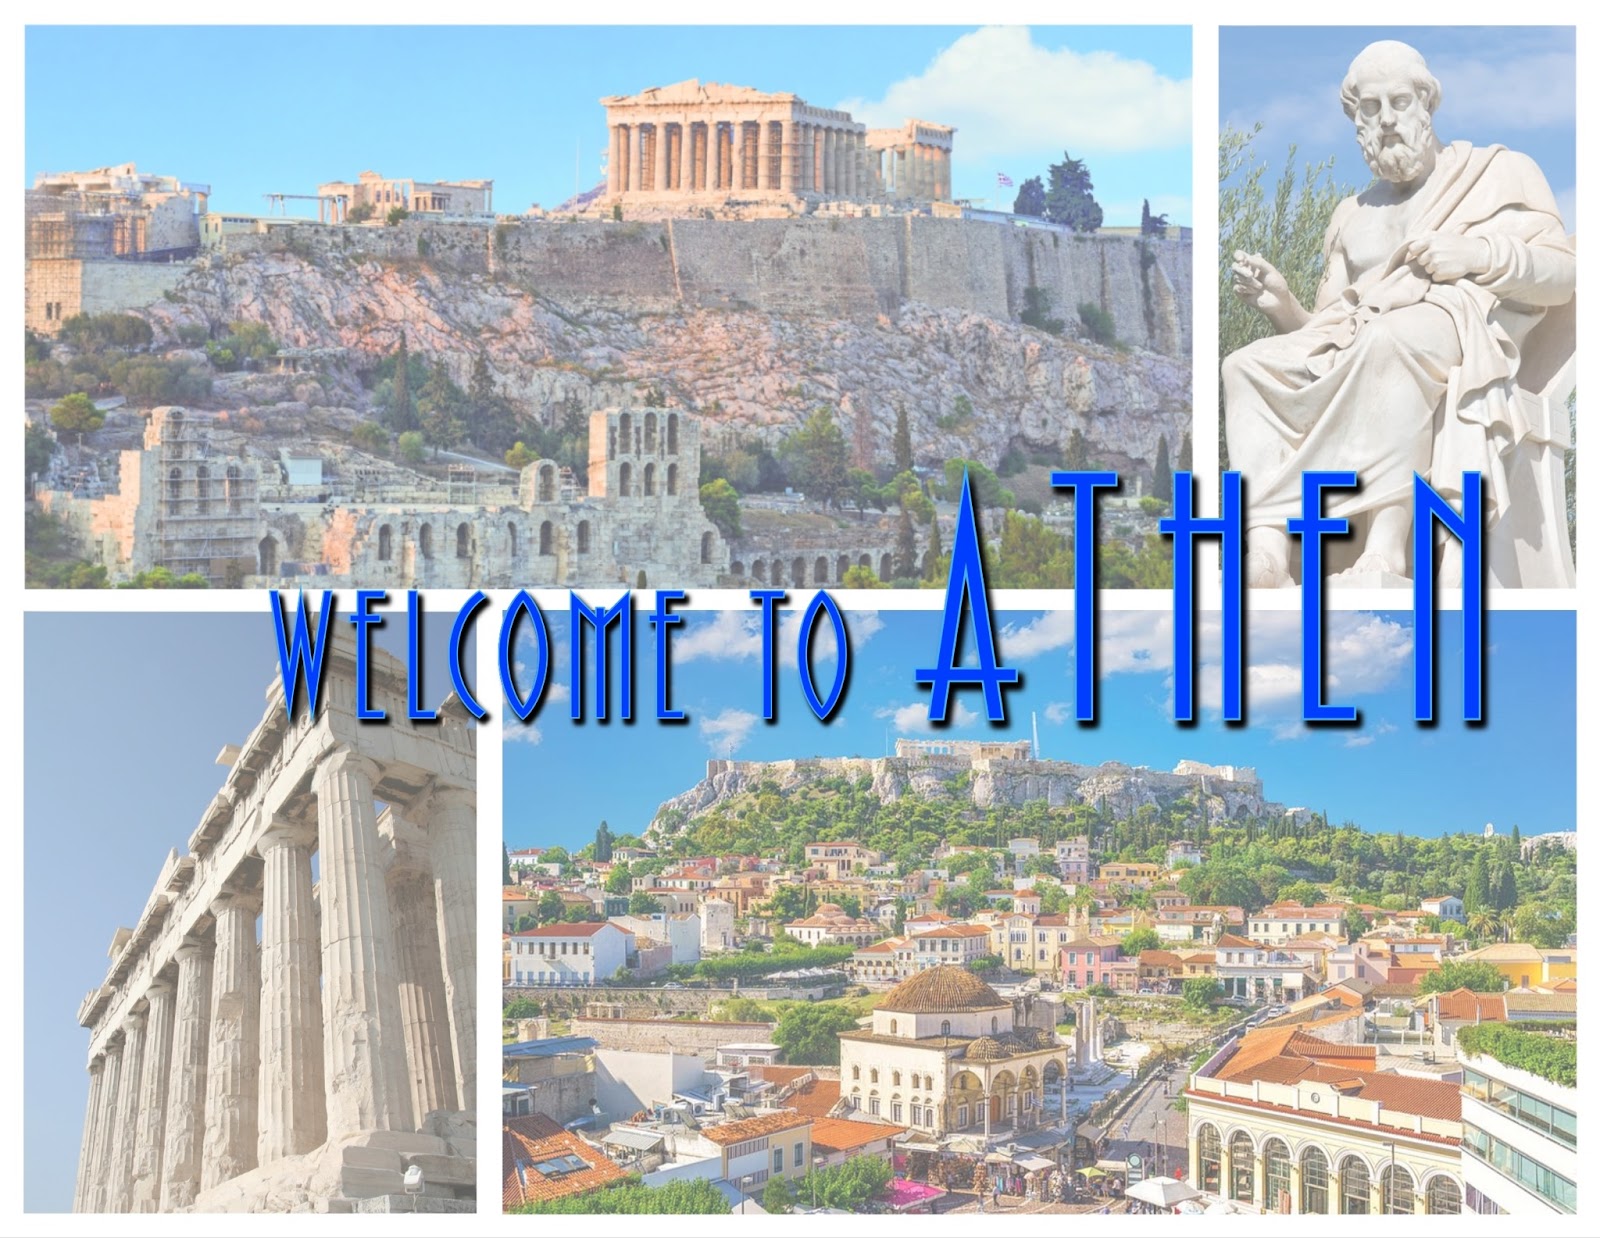 Athen-Postcard.jpg